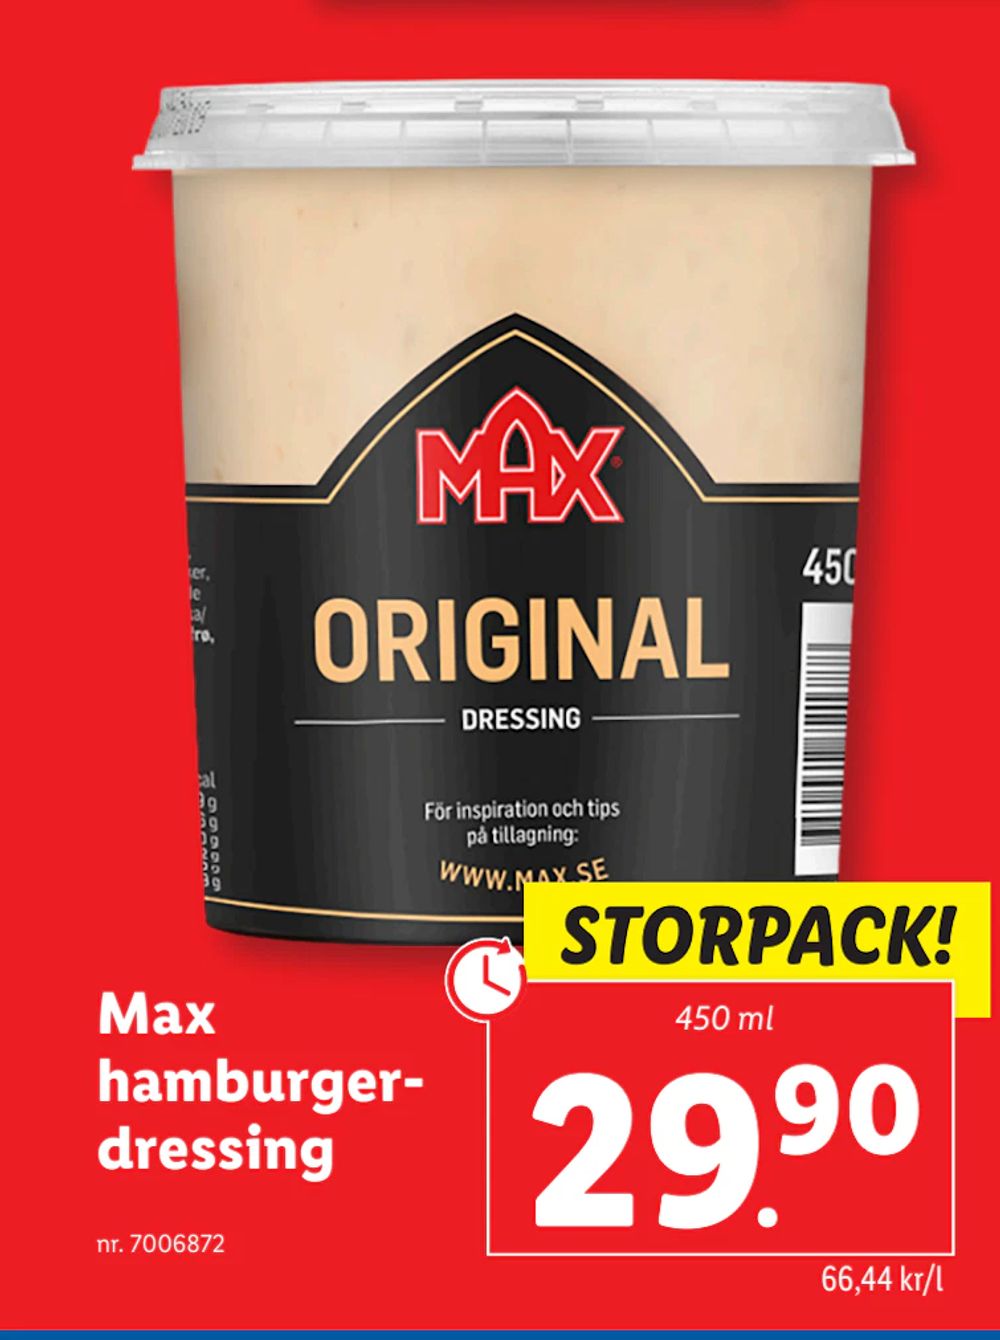 Erbjudanden på Max hamburgerdressing från Lidl för 29,90 kr